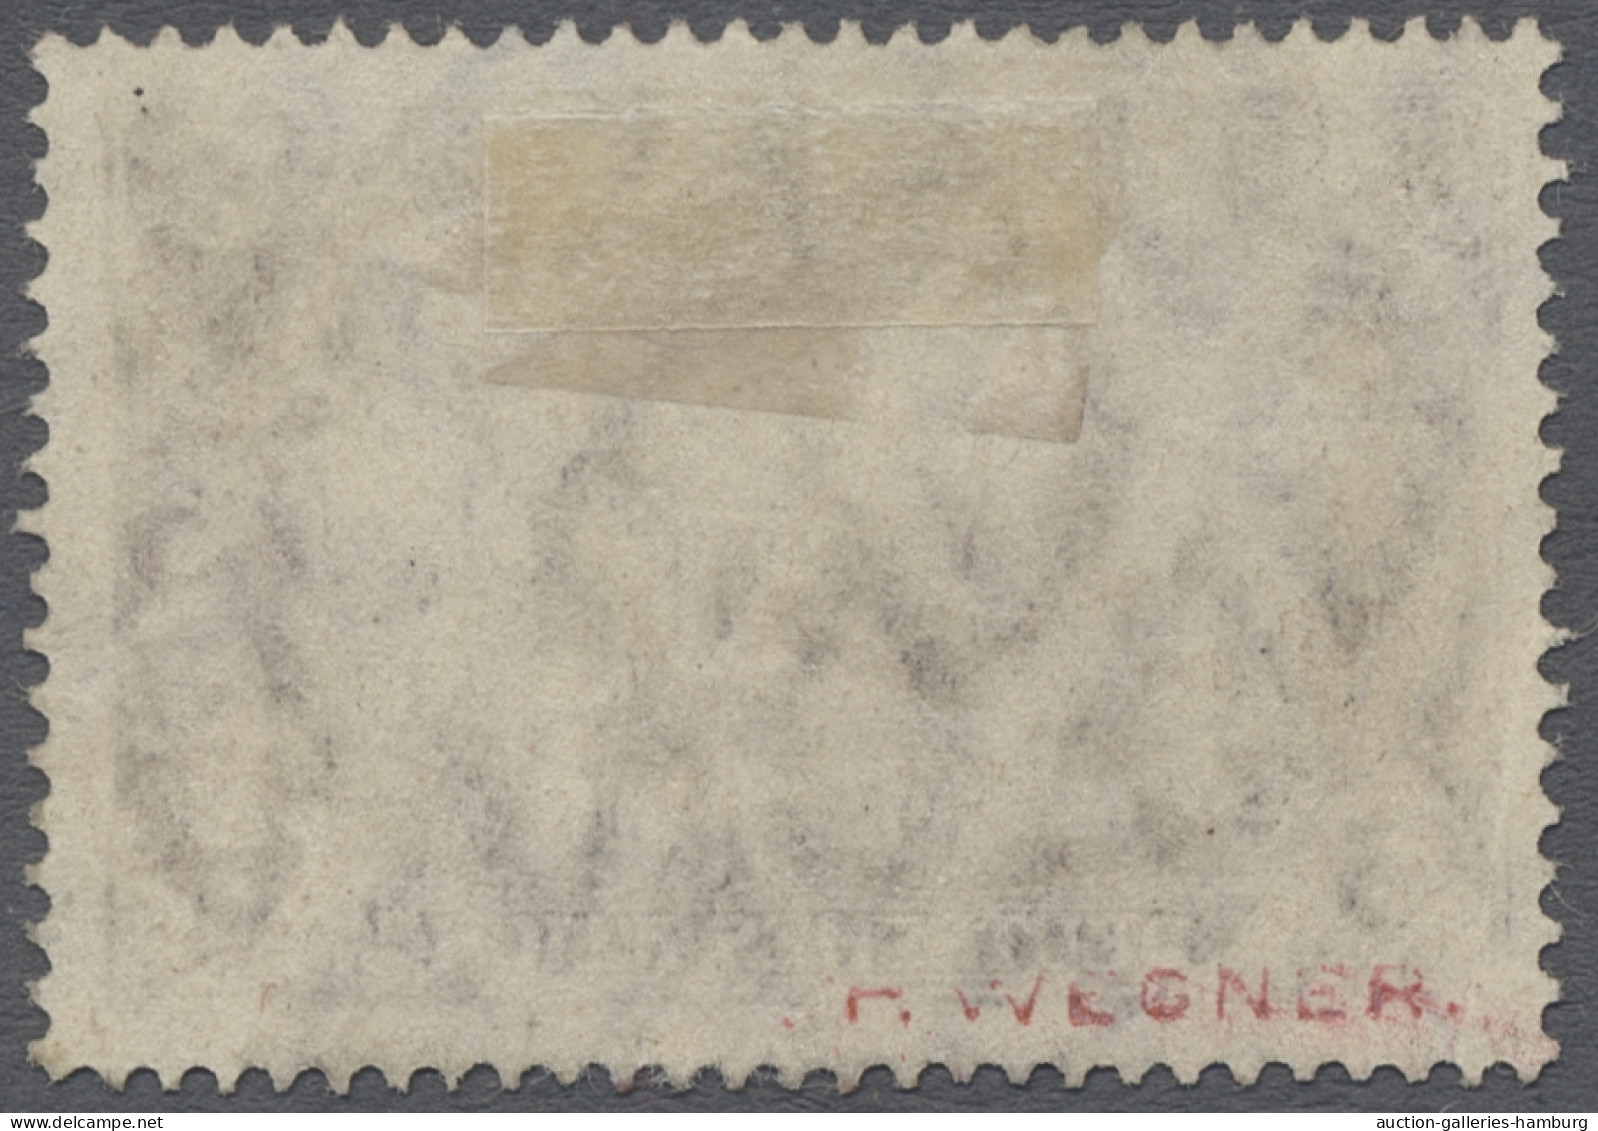 O Deutsche Post In Marokko: 1911, DEUTSCHES REICH Mit Wz., Landesname "Marokko", D - Deutsche Post In Marokko